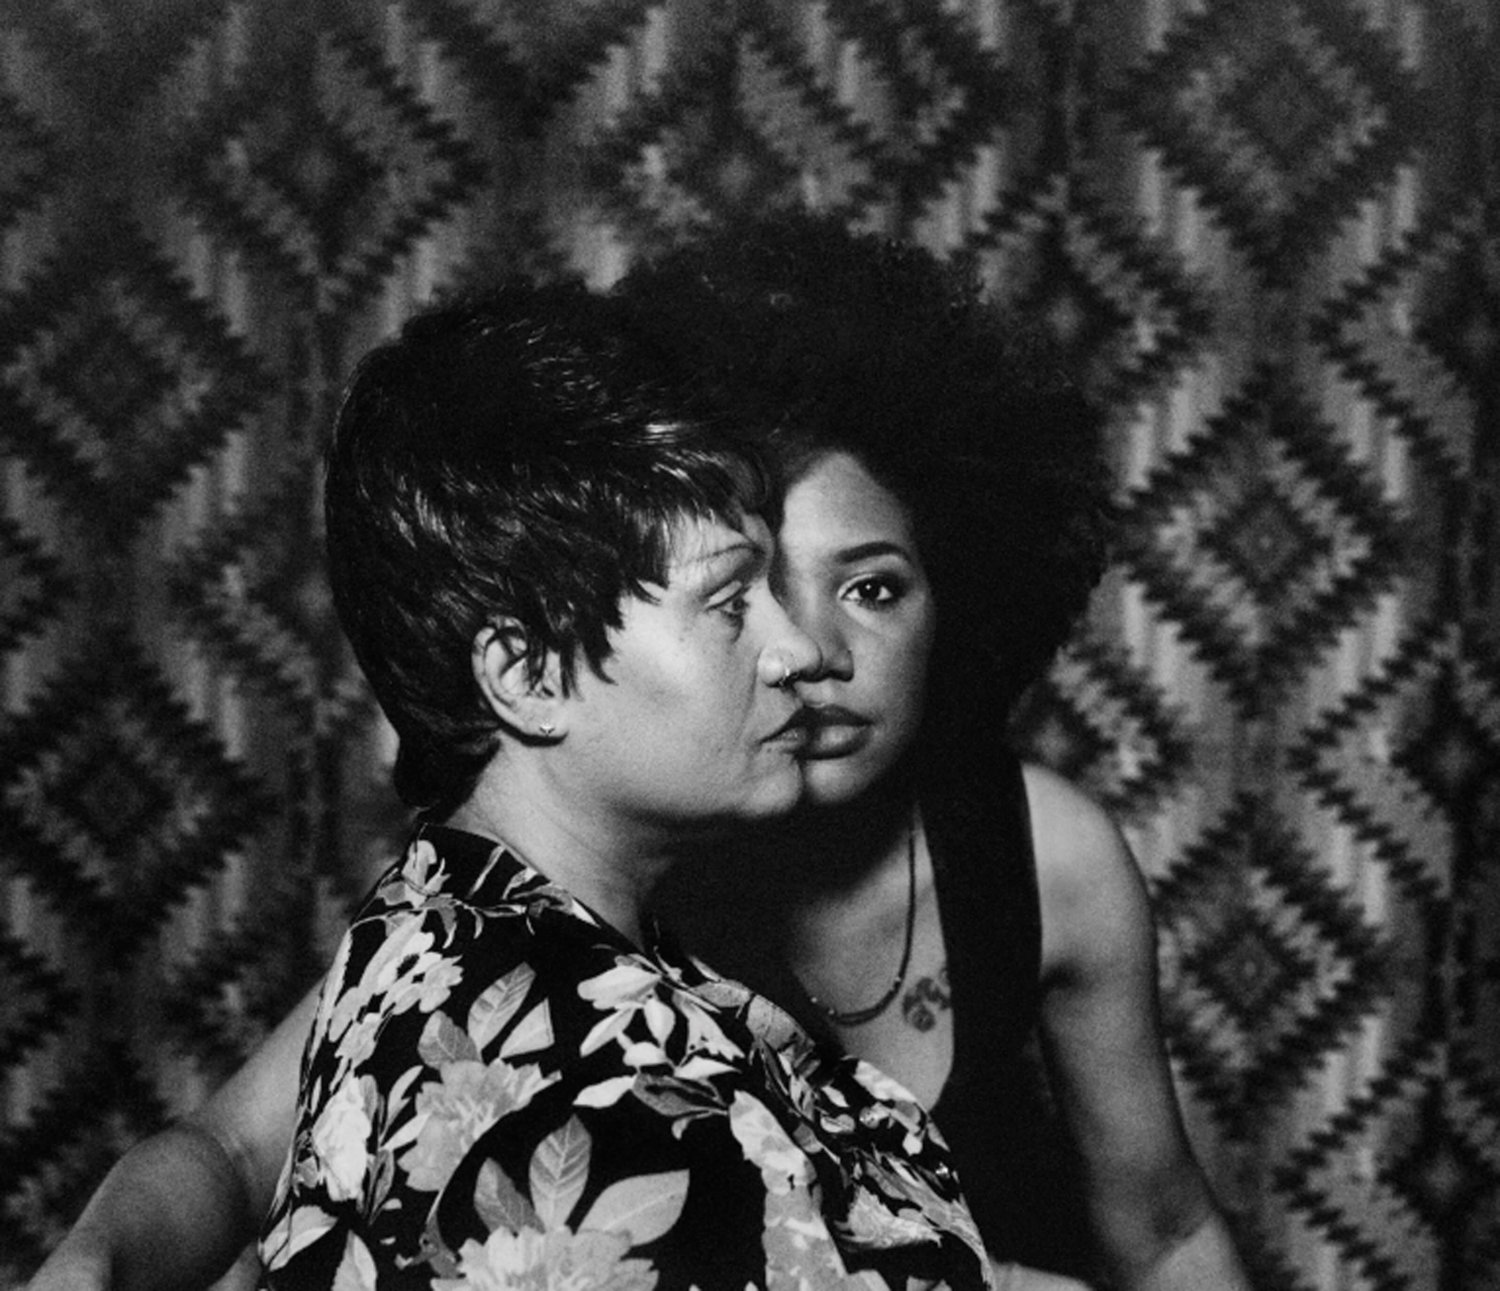 Schwarz-Weiß-Fotografie von LaToya Ruby Frazier, die sie mit ihrer Mutter vor einem gemusterten Vorhang zeigt